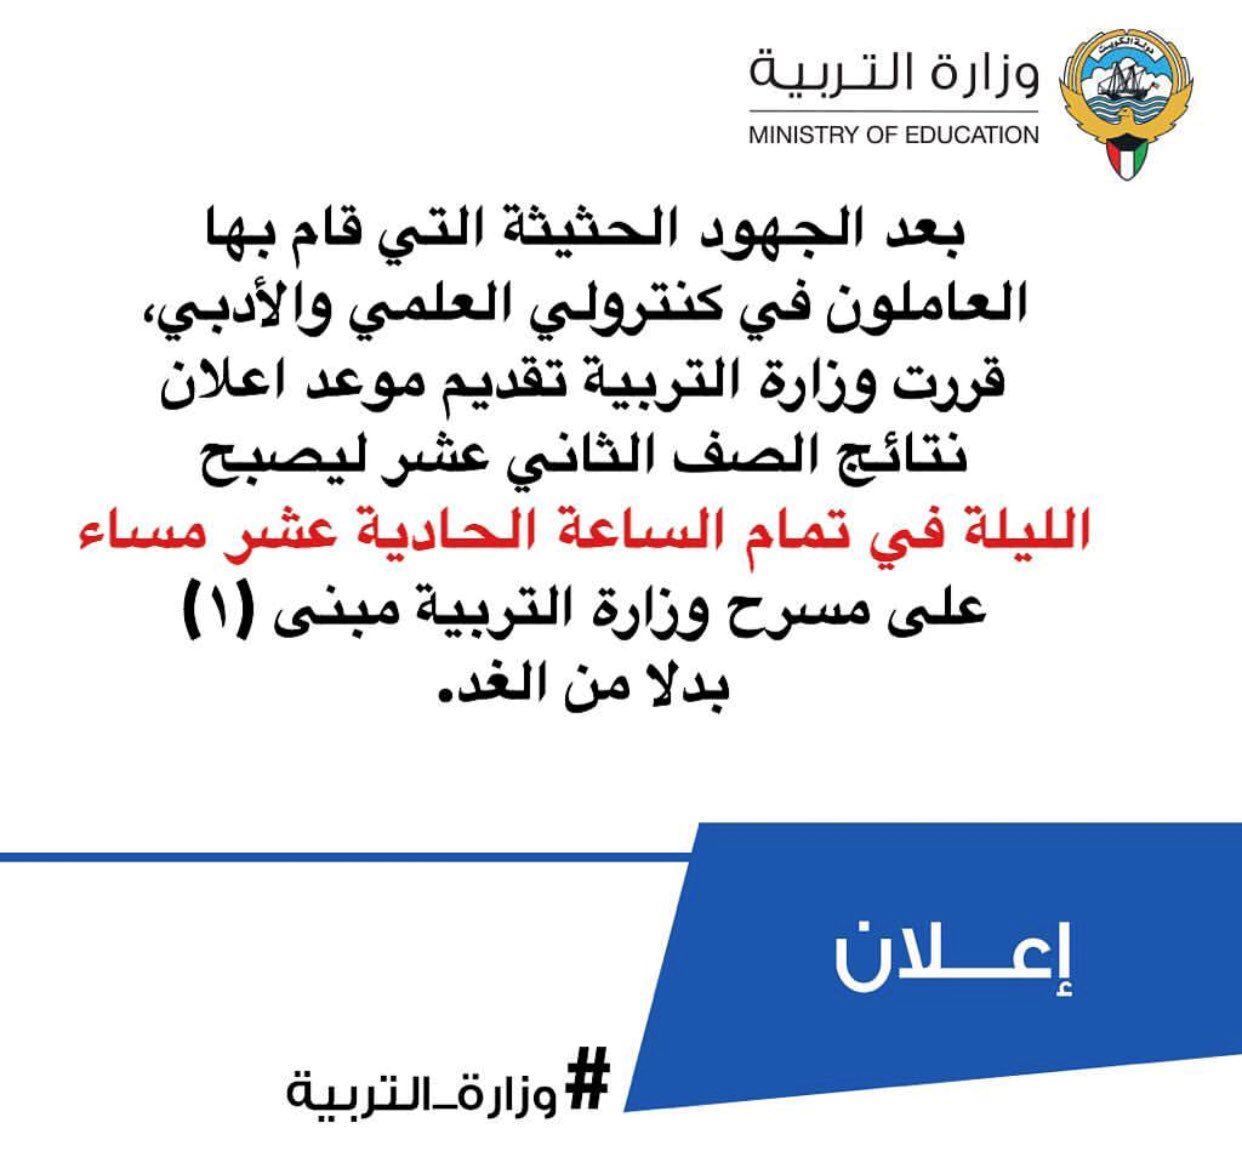 موعد اعلان نتائج الثانوية العامة في الكويت لعام 2018